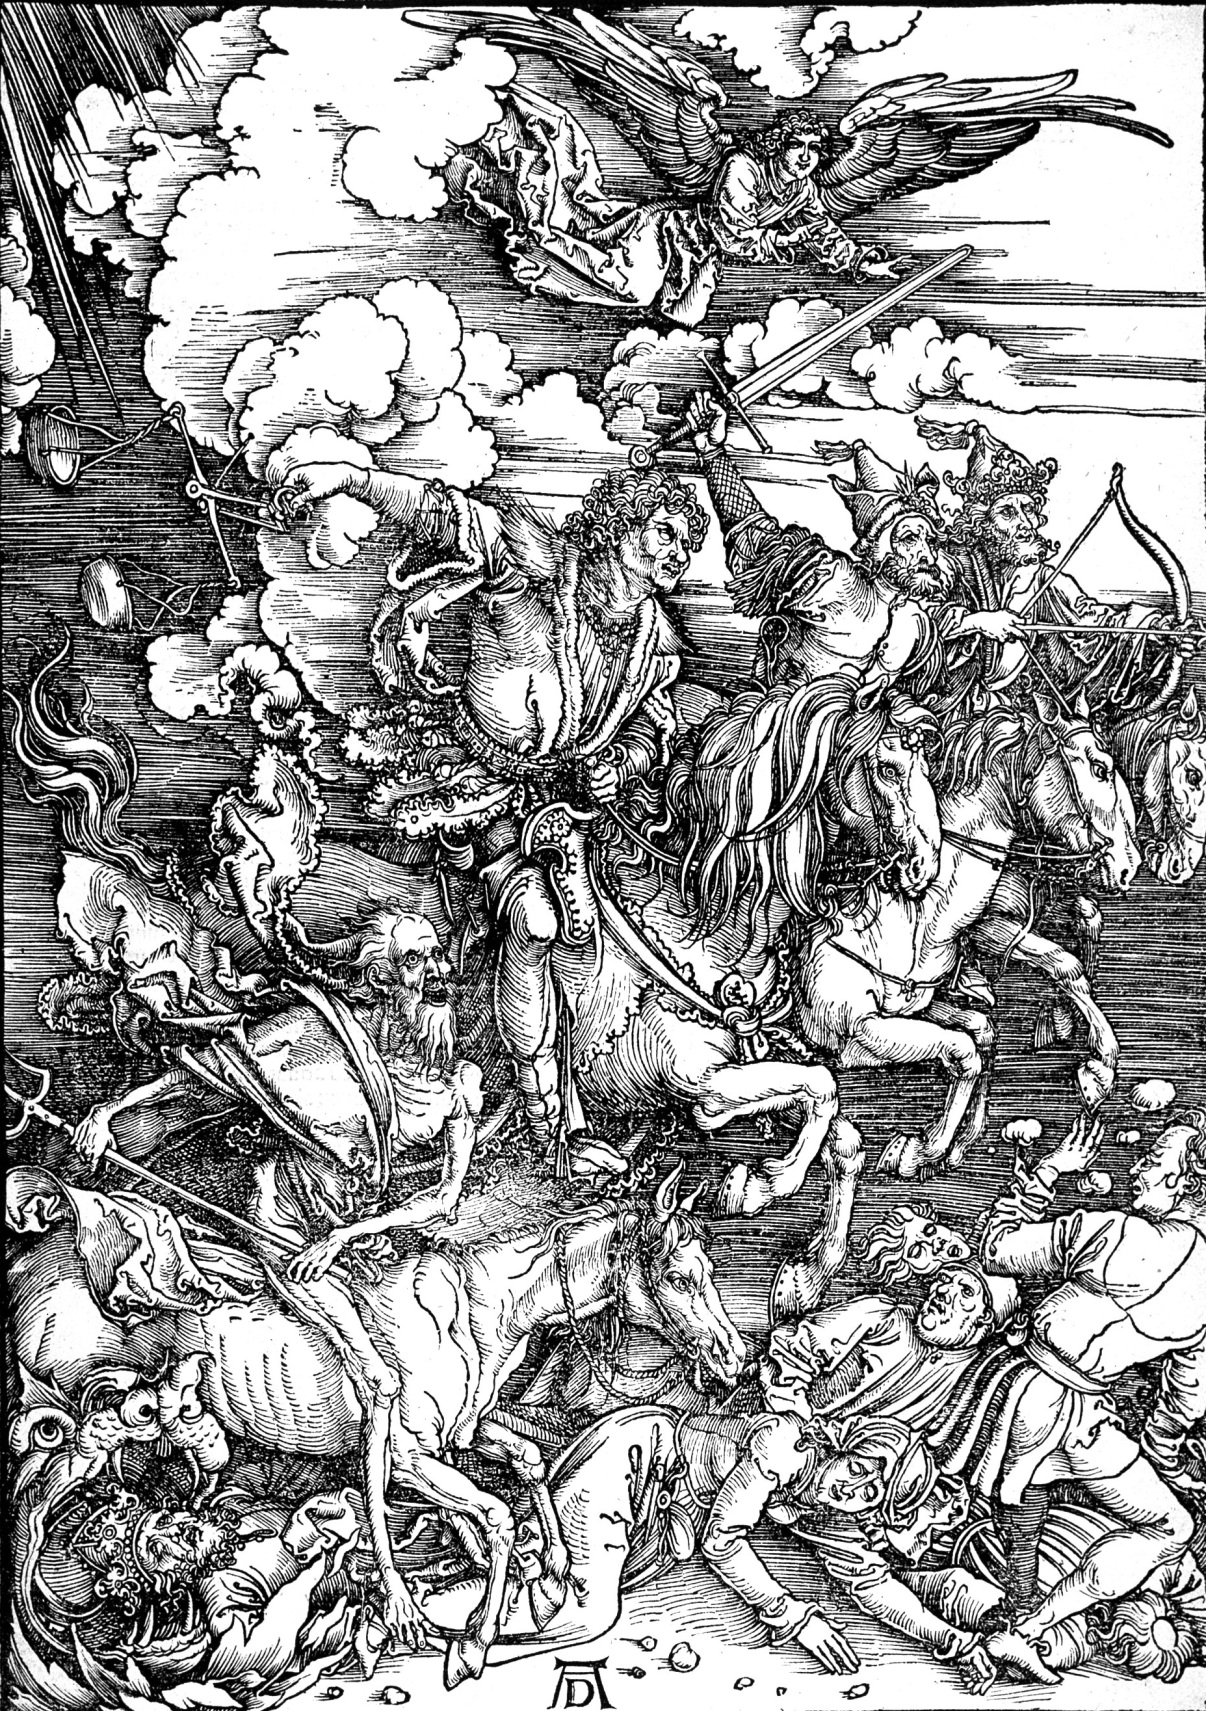 Dürers, Albrecht. Die Offenbarung des Johannes: 4. Die vier apokalyptischen Reiter, 1497-1498.